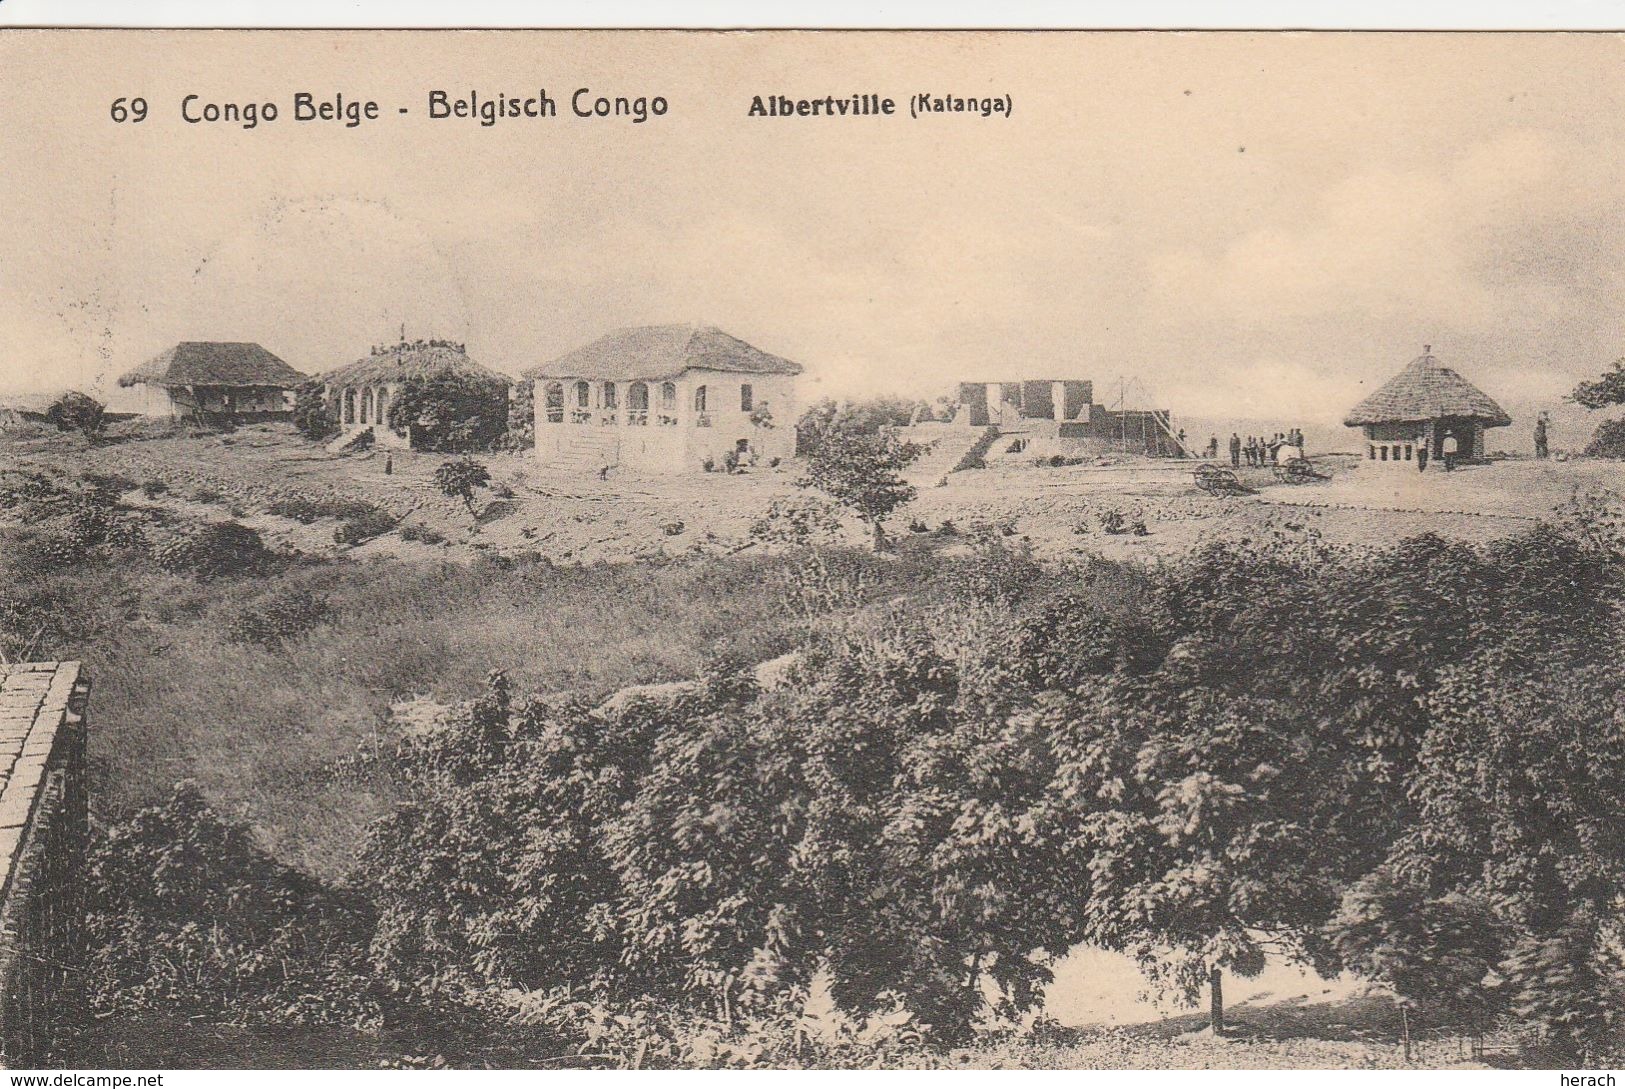 Congo Belge Entier Postal Illustré 1917 - Interi Postali